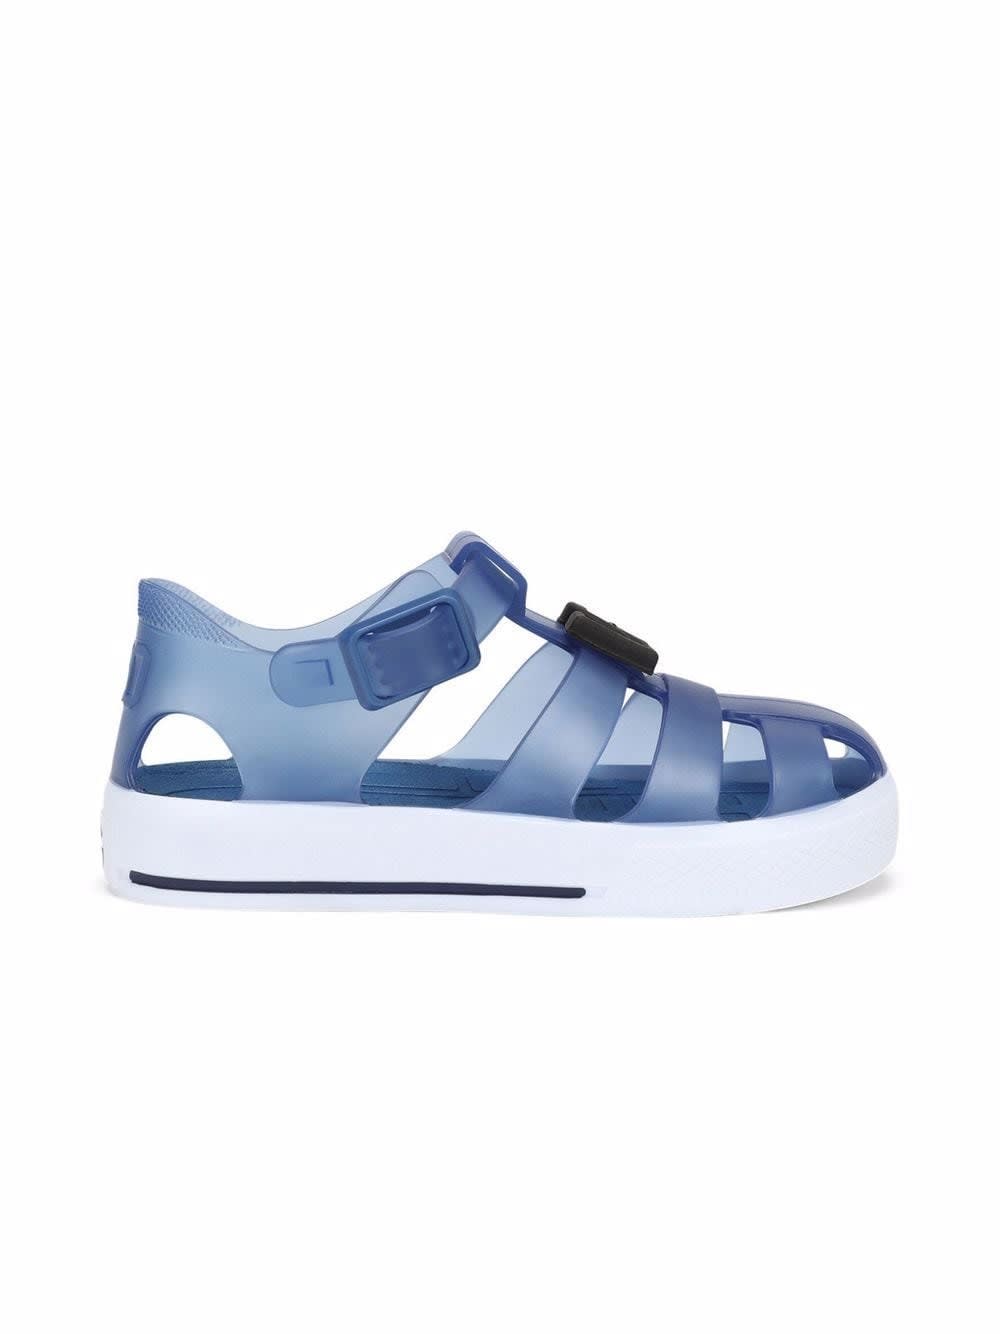 Dolce & Gabbana Kids' Blue Rubber Sandals